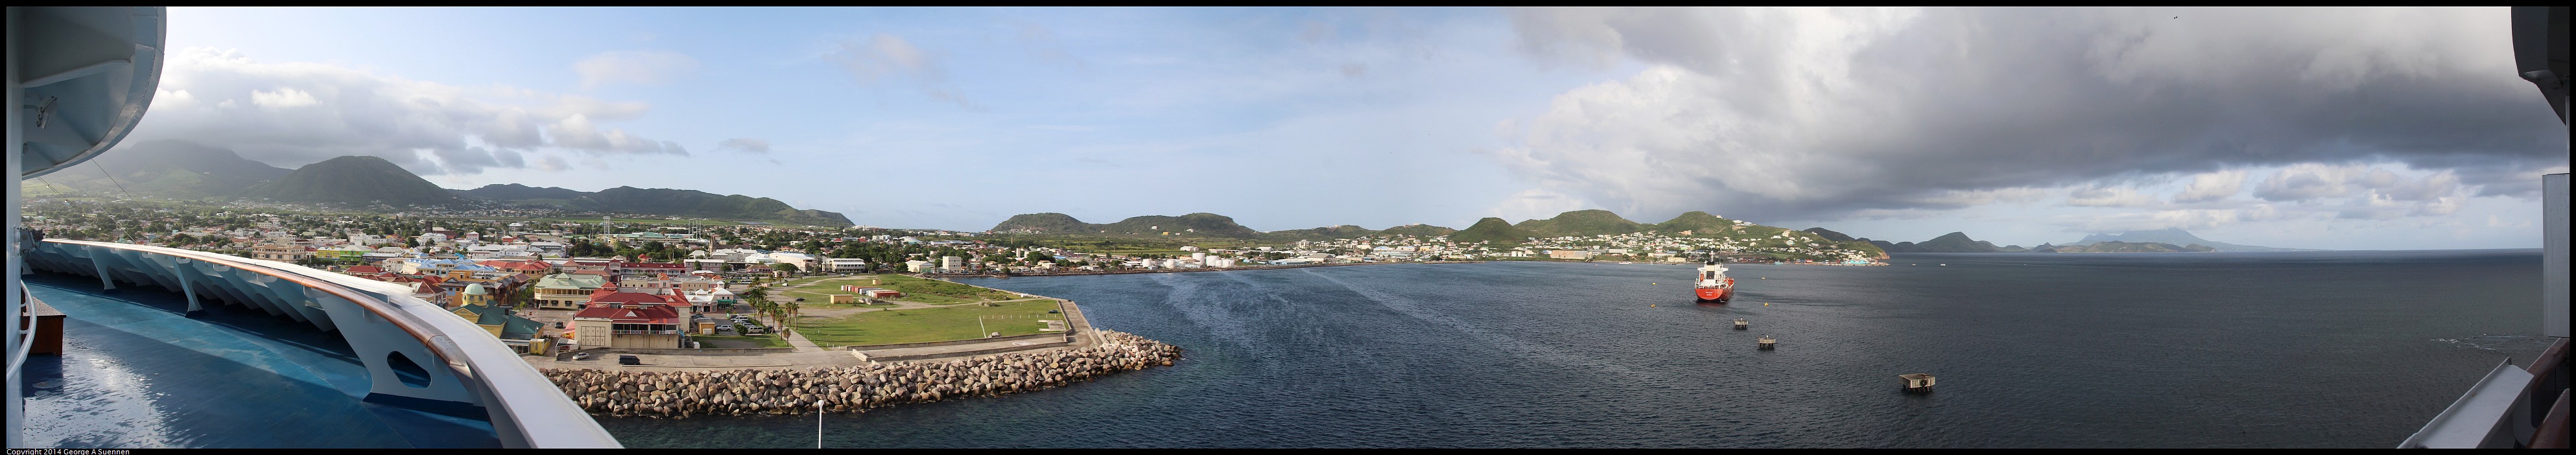 St-Kitts3.jpg - St Kitts - Starboard Side